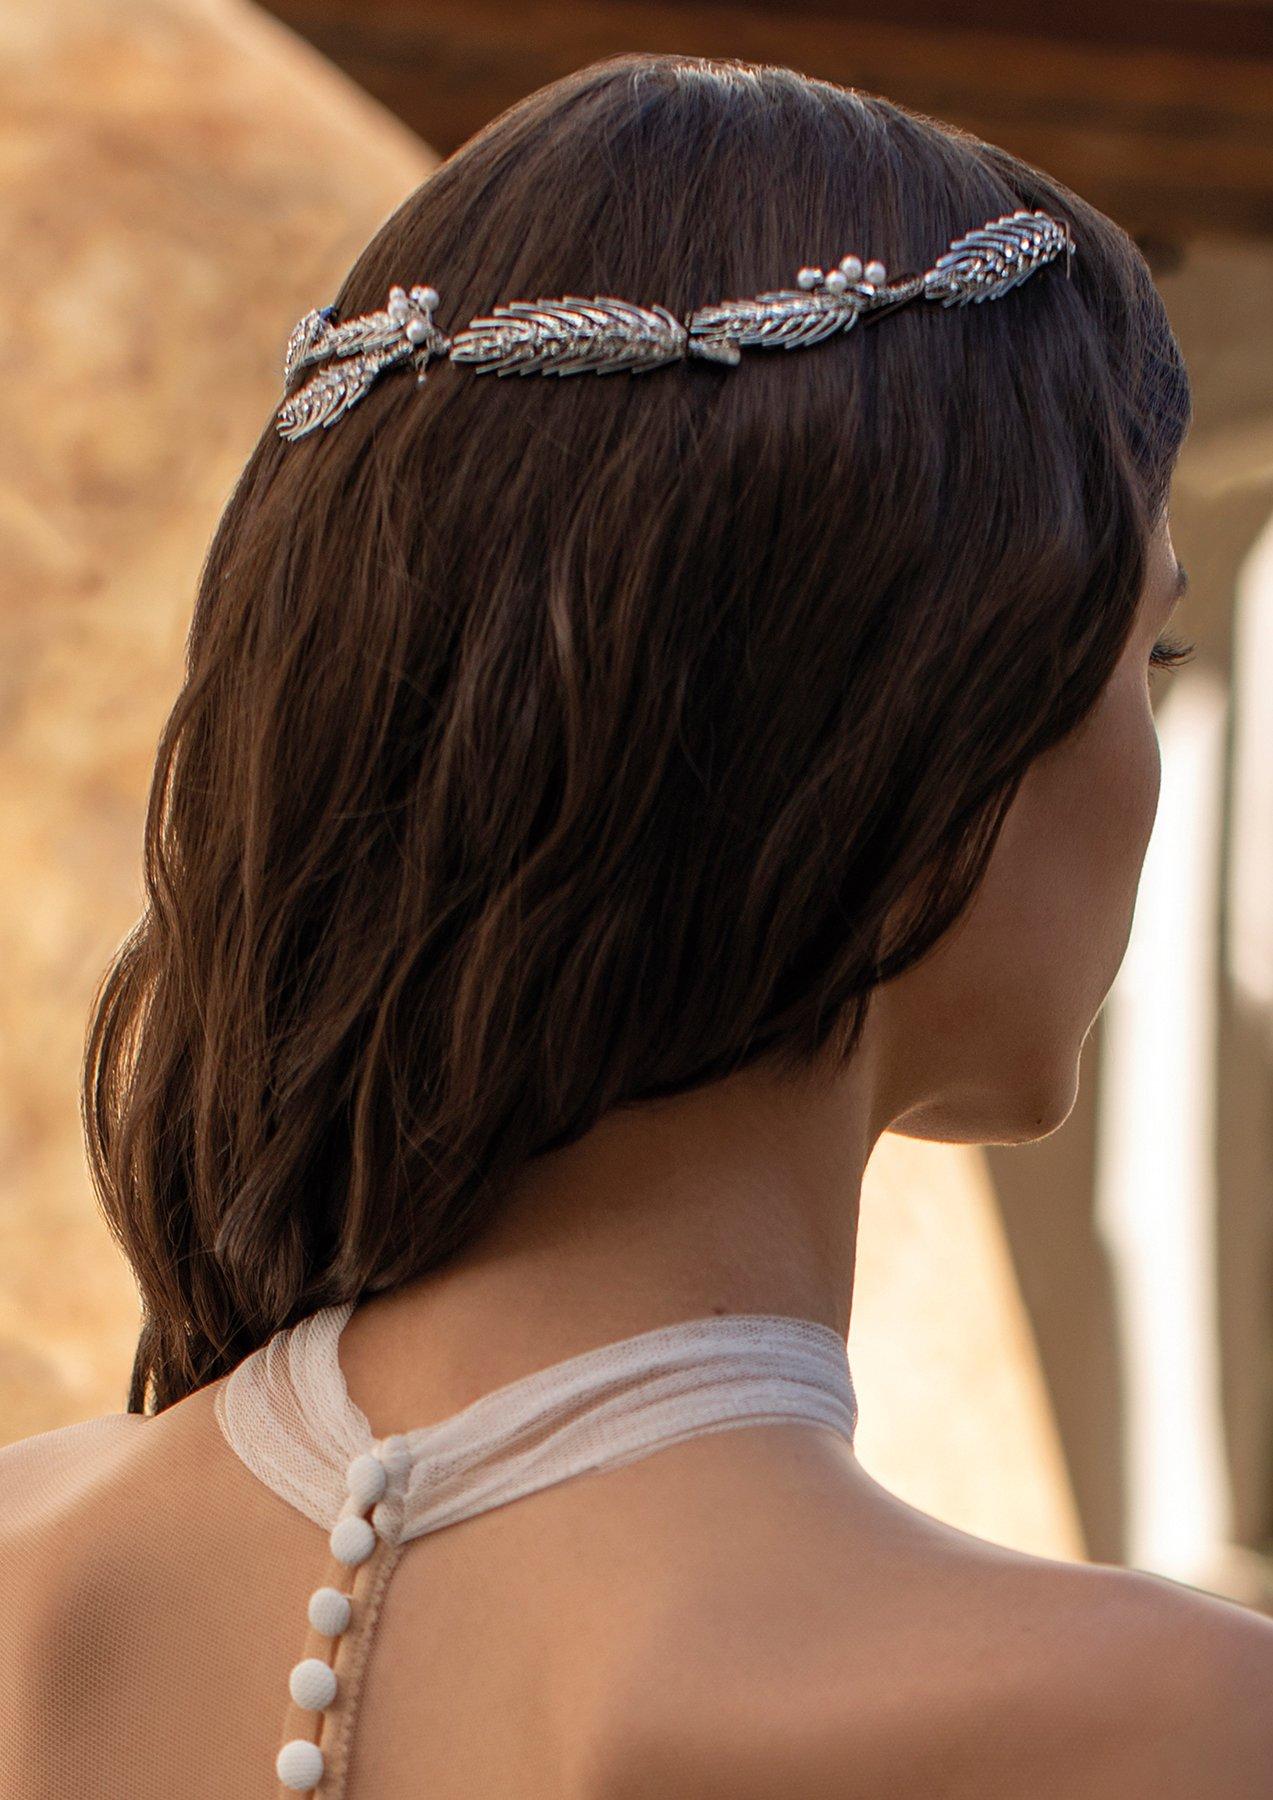 Penteados com tiara para casamento: um estilo mais original para a noiva